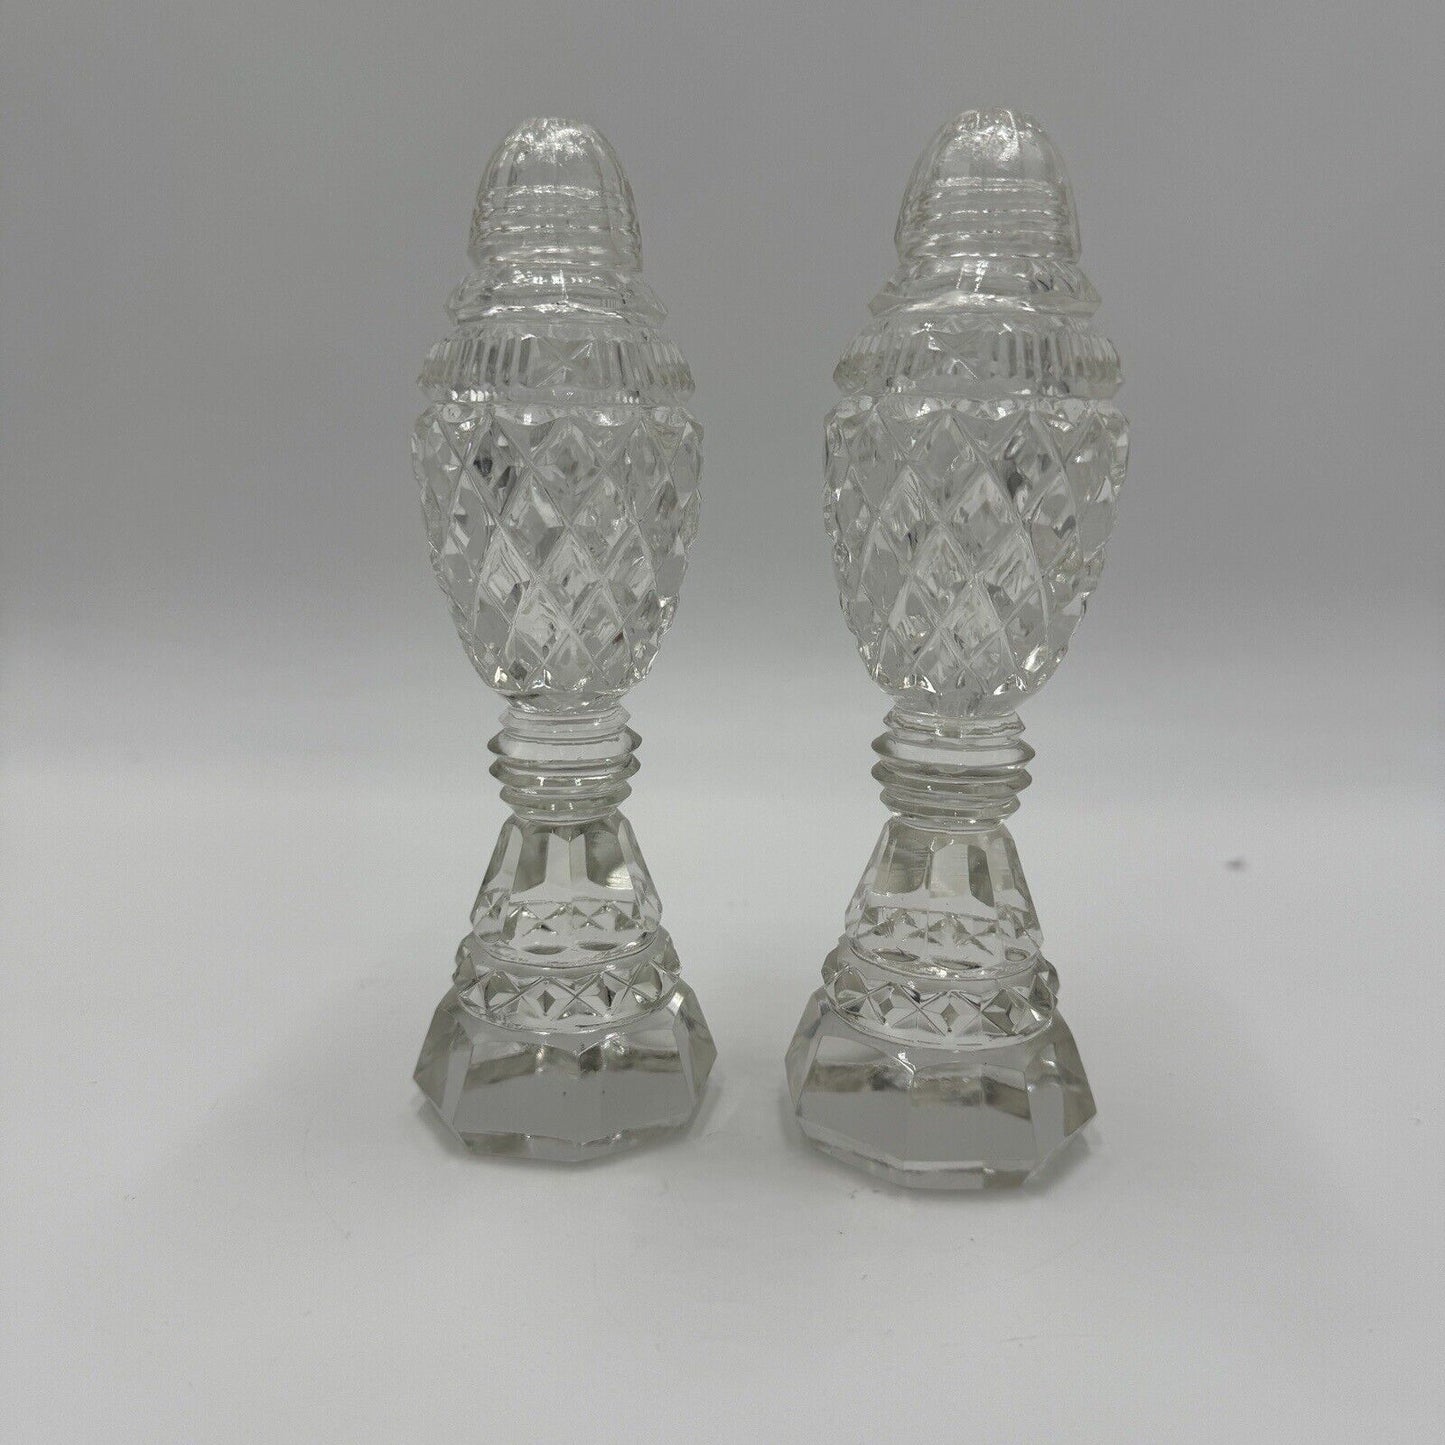 Antique Bohemian Czech Cut Glass Pedestal Salt & Pepper Shakers 6”H